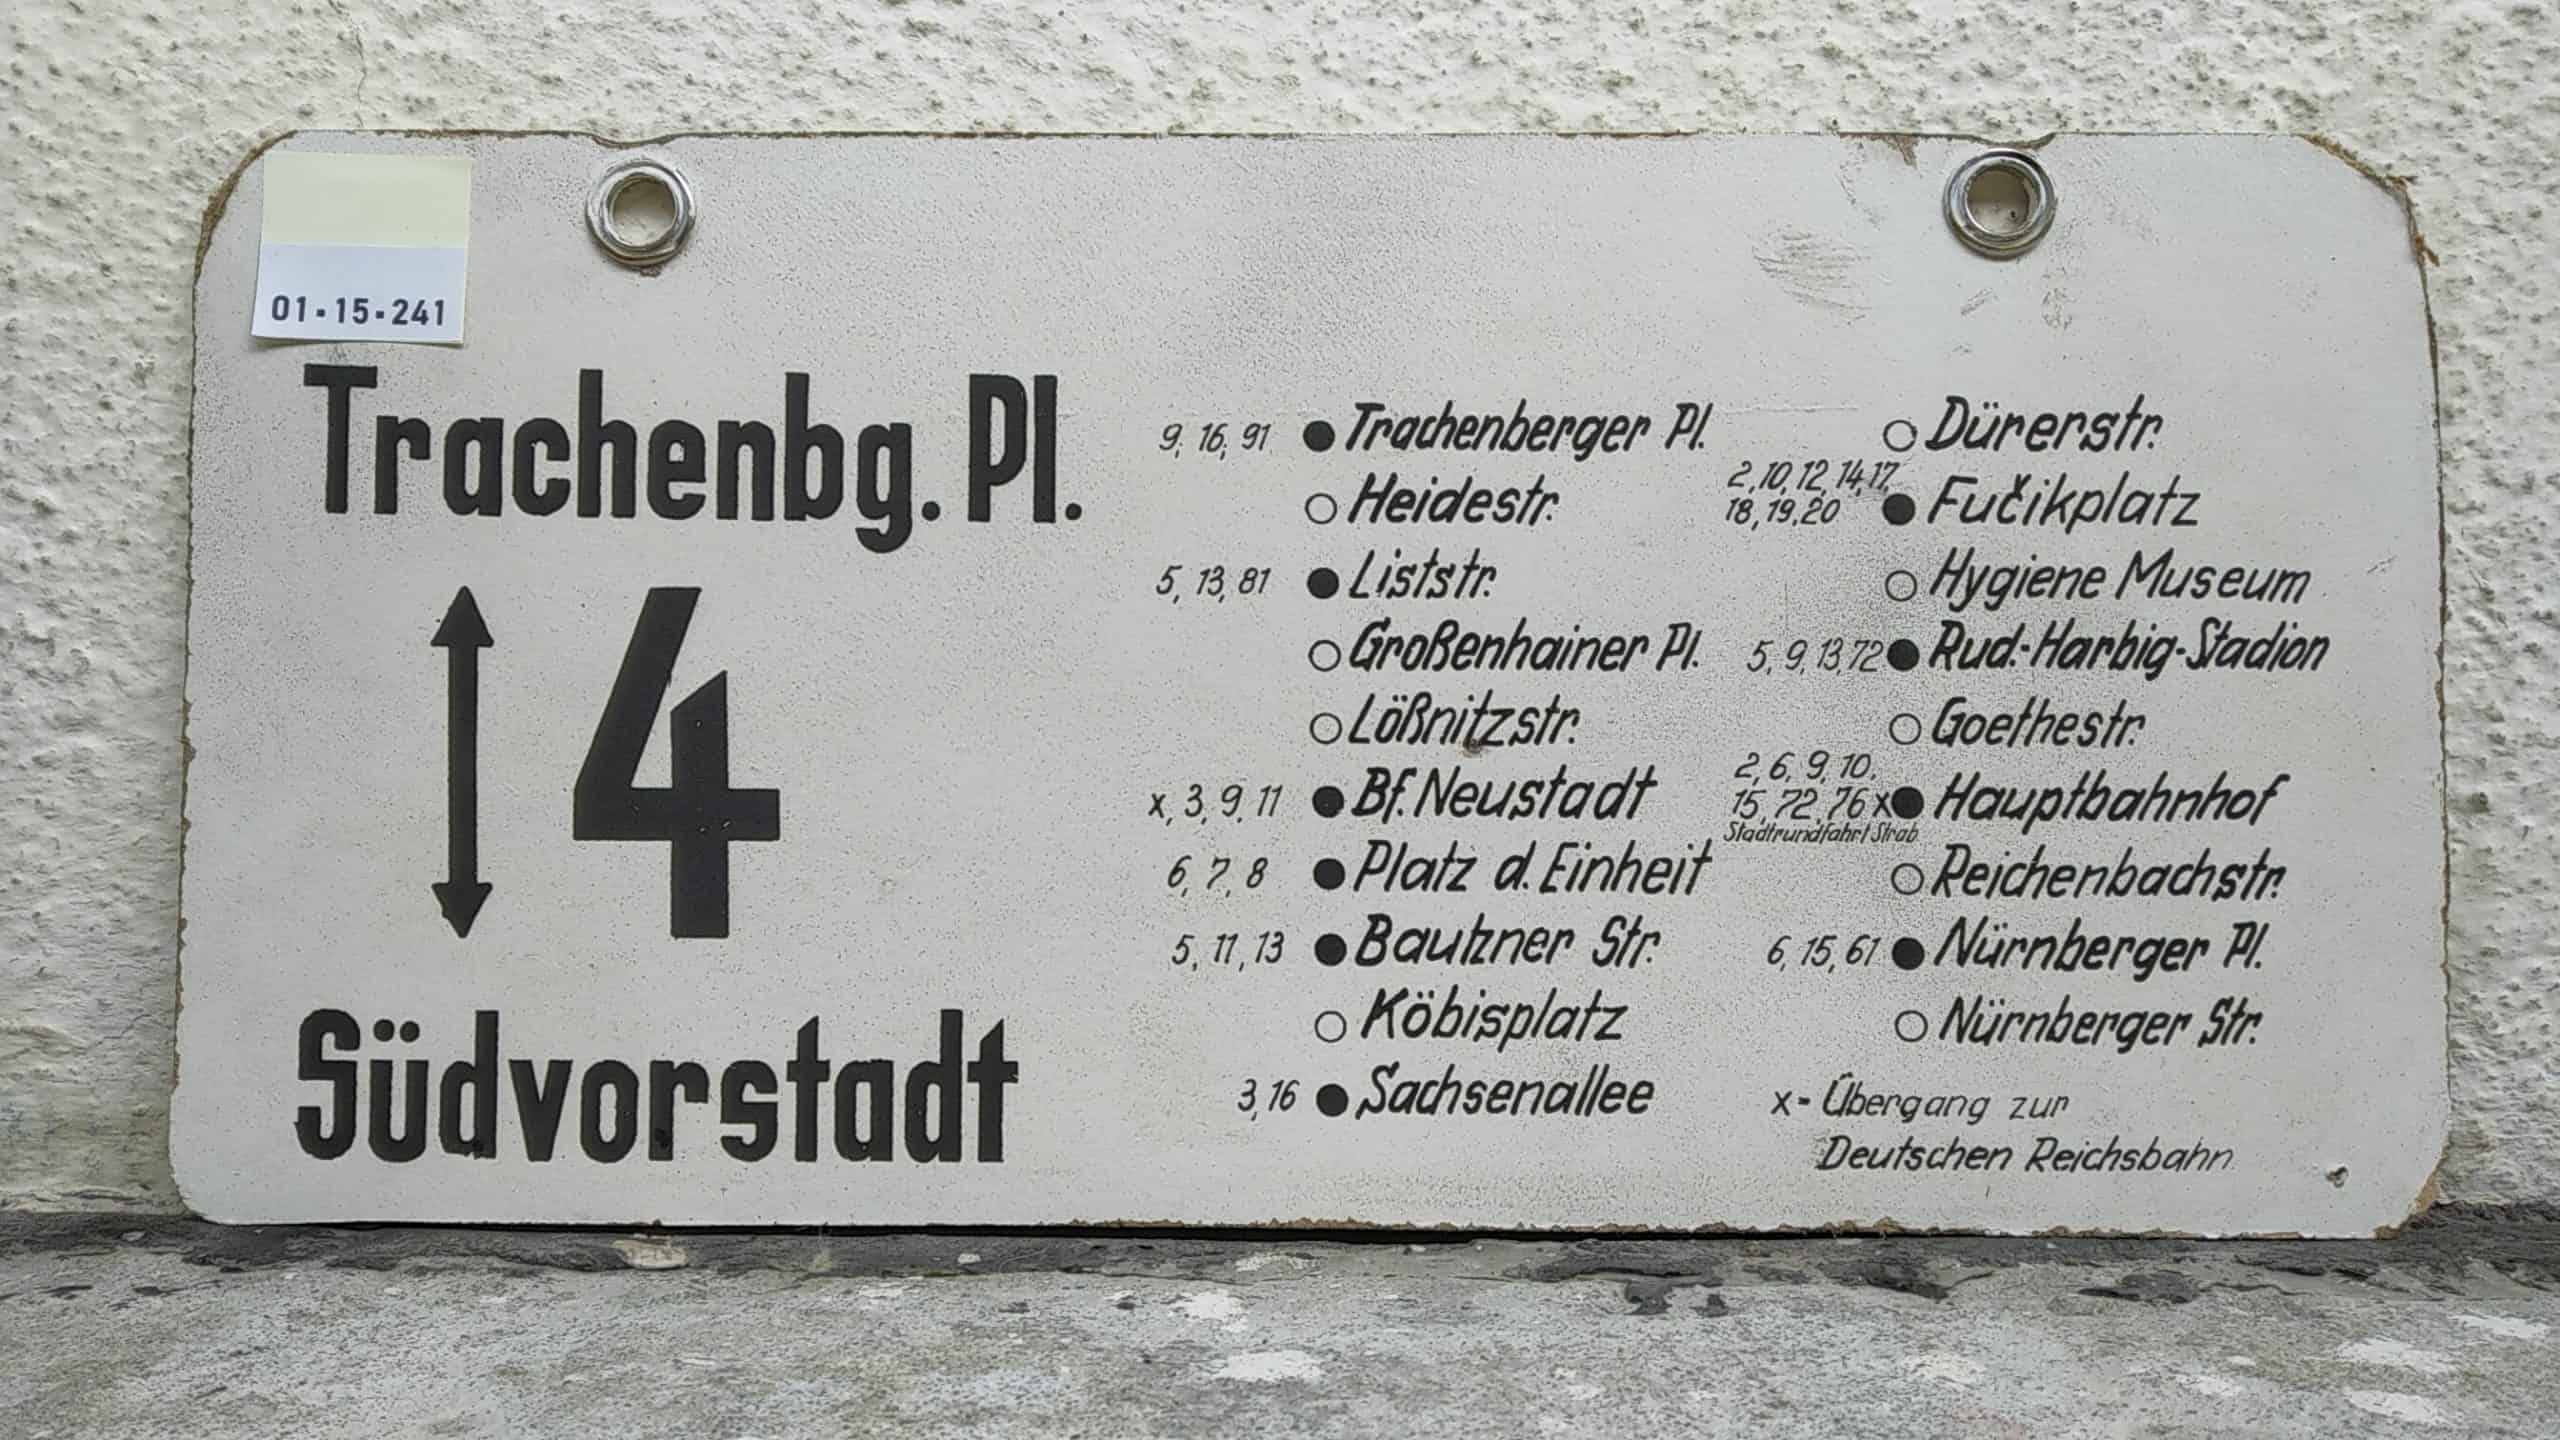 Ein seltenes Straßenbahn-Linienschild aus Dresden der Linie 4 von Trachenberger Pl. nach Südvorstadt Nürnberger Str. #2